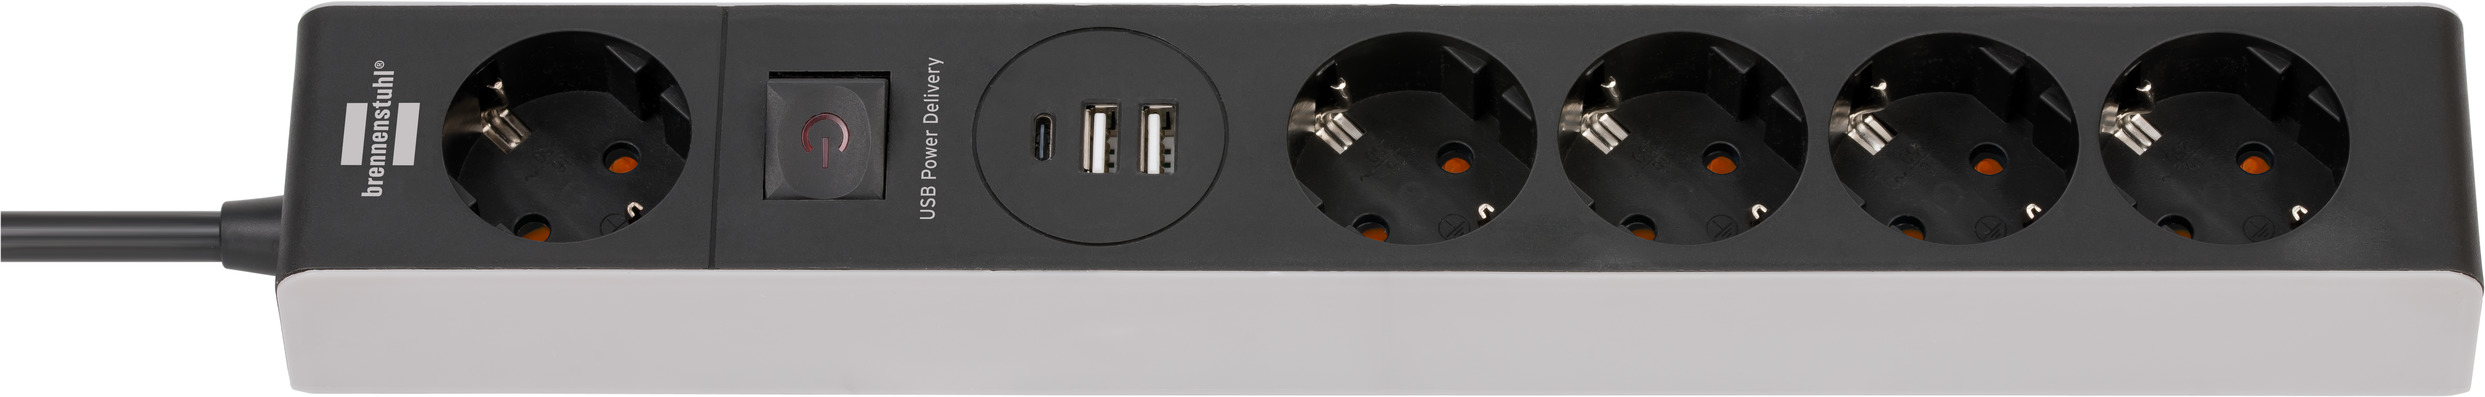 Paquete Plug & Play - SpectraBULB X55 + Reflector reforzado con enchufe